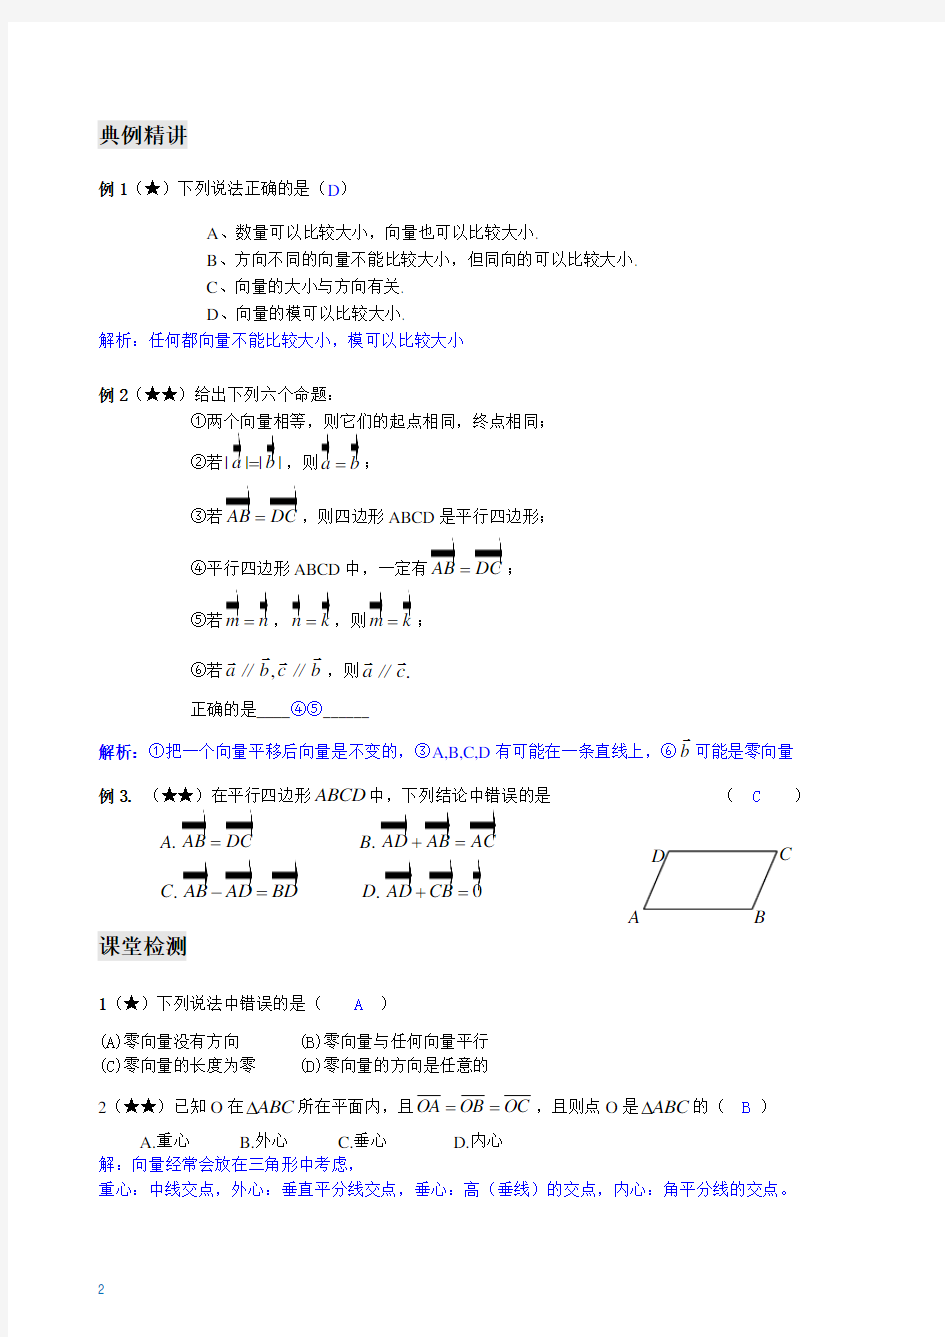 沪教版(上海)高二上学期数学 第八章 平面向量的坐标表示 综合复习教案